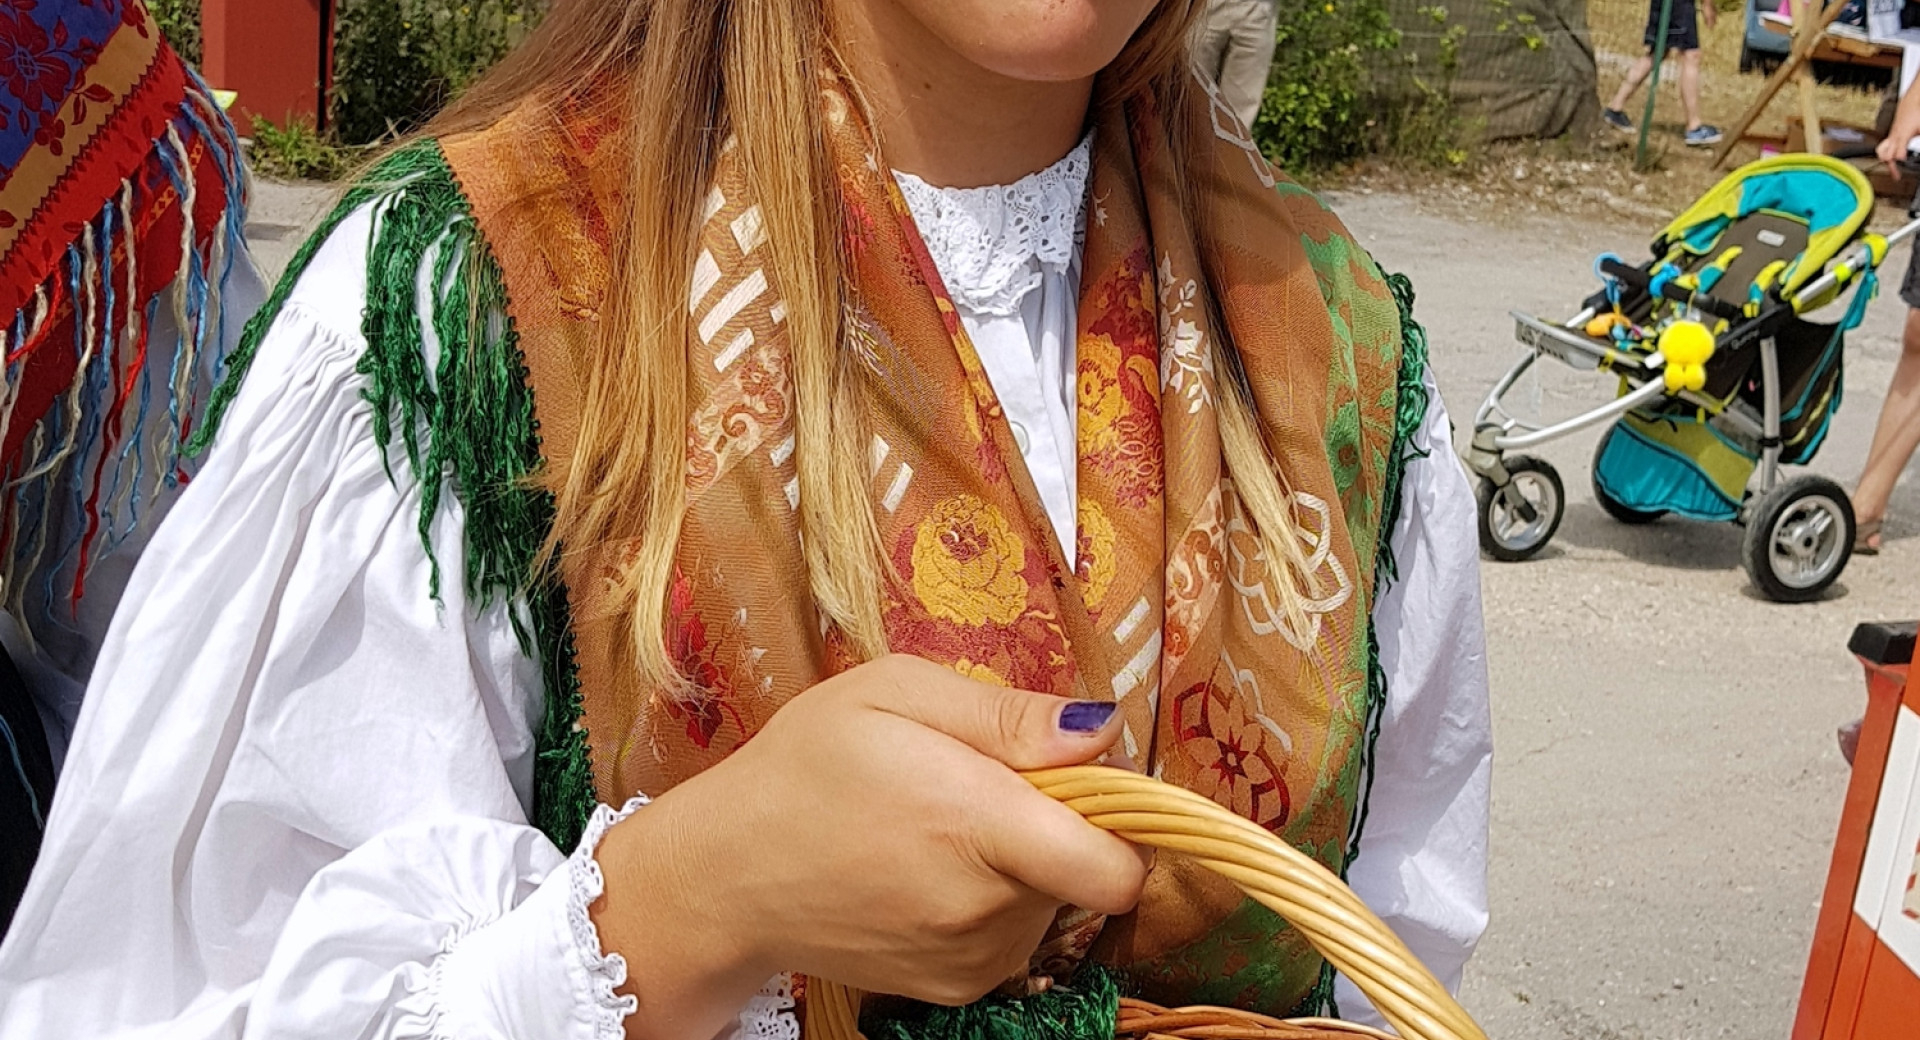 Praznik borovnic v Borovnici; ženska s košaro, polno borovnic